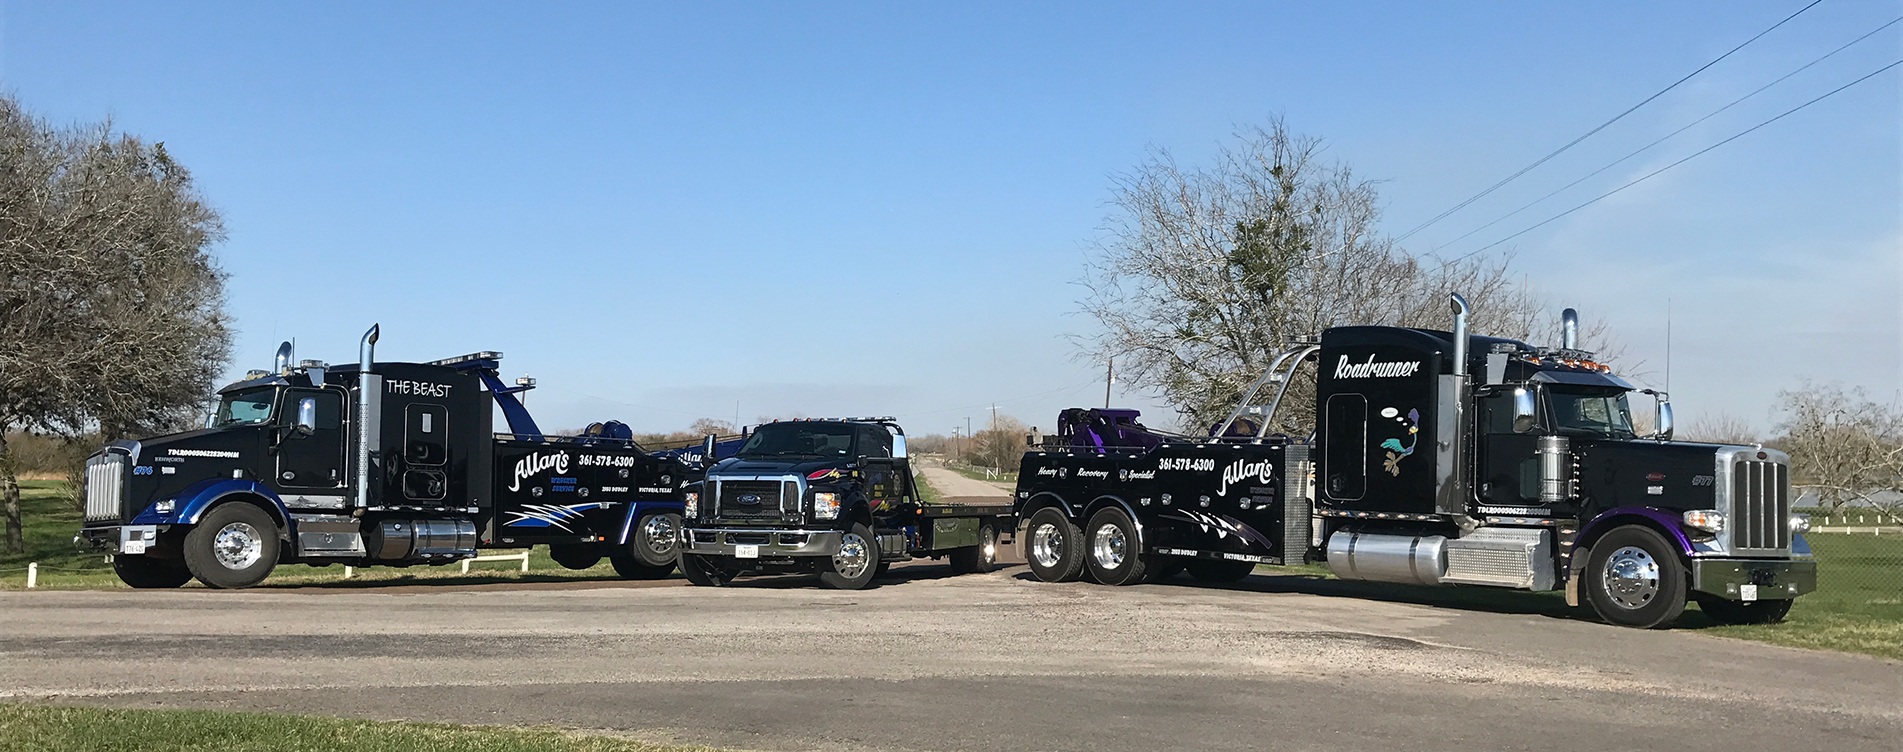 group of trucks